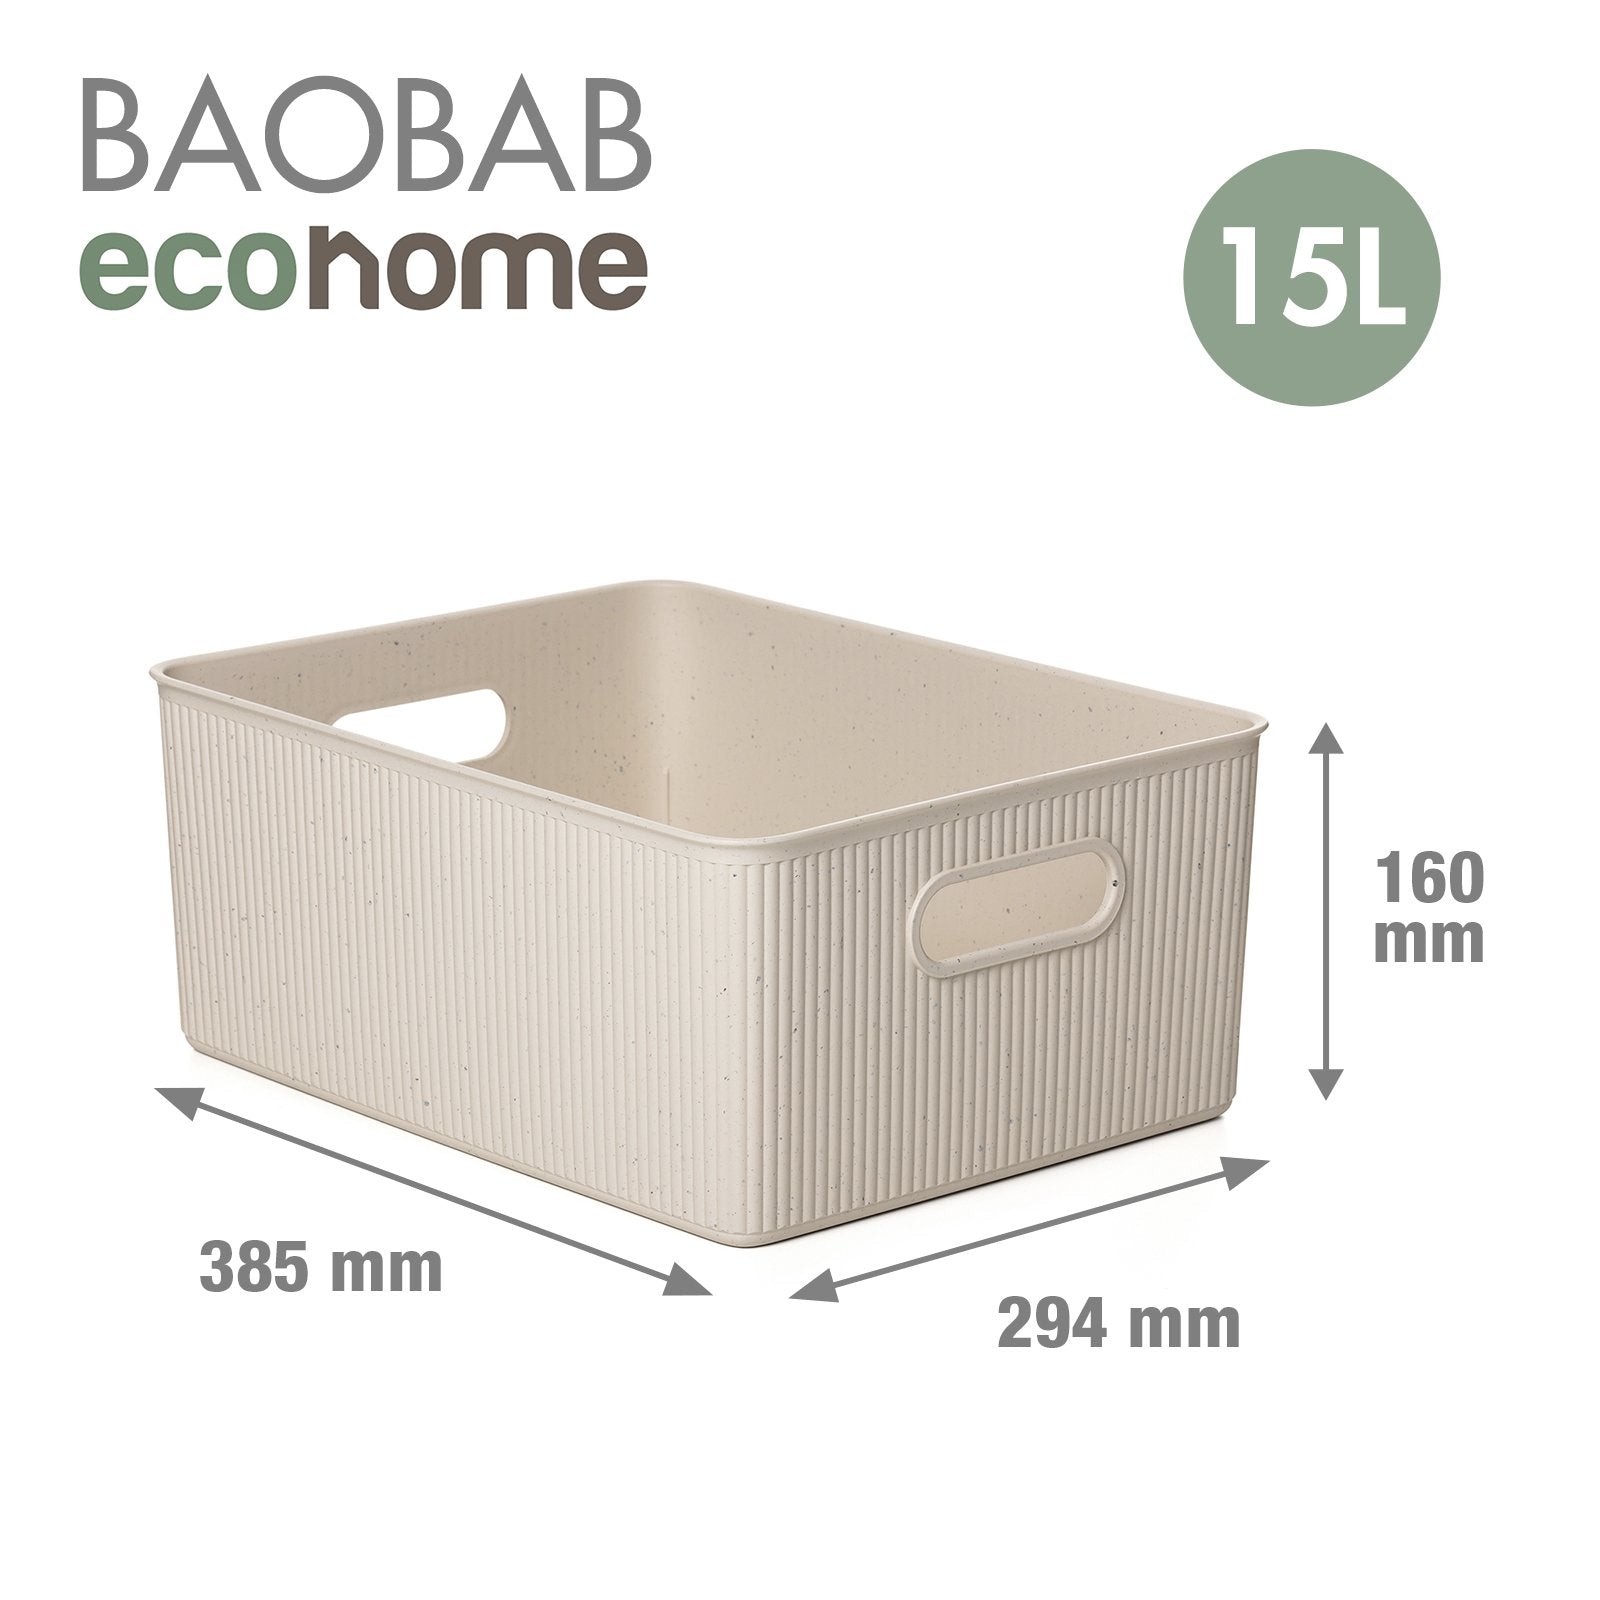 TATAY 7010338 - Cesta de Ordenación Rectangular Tamaño L de 15L Baobab EcoHome